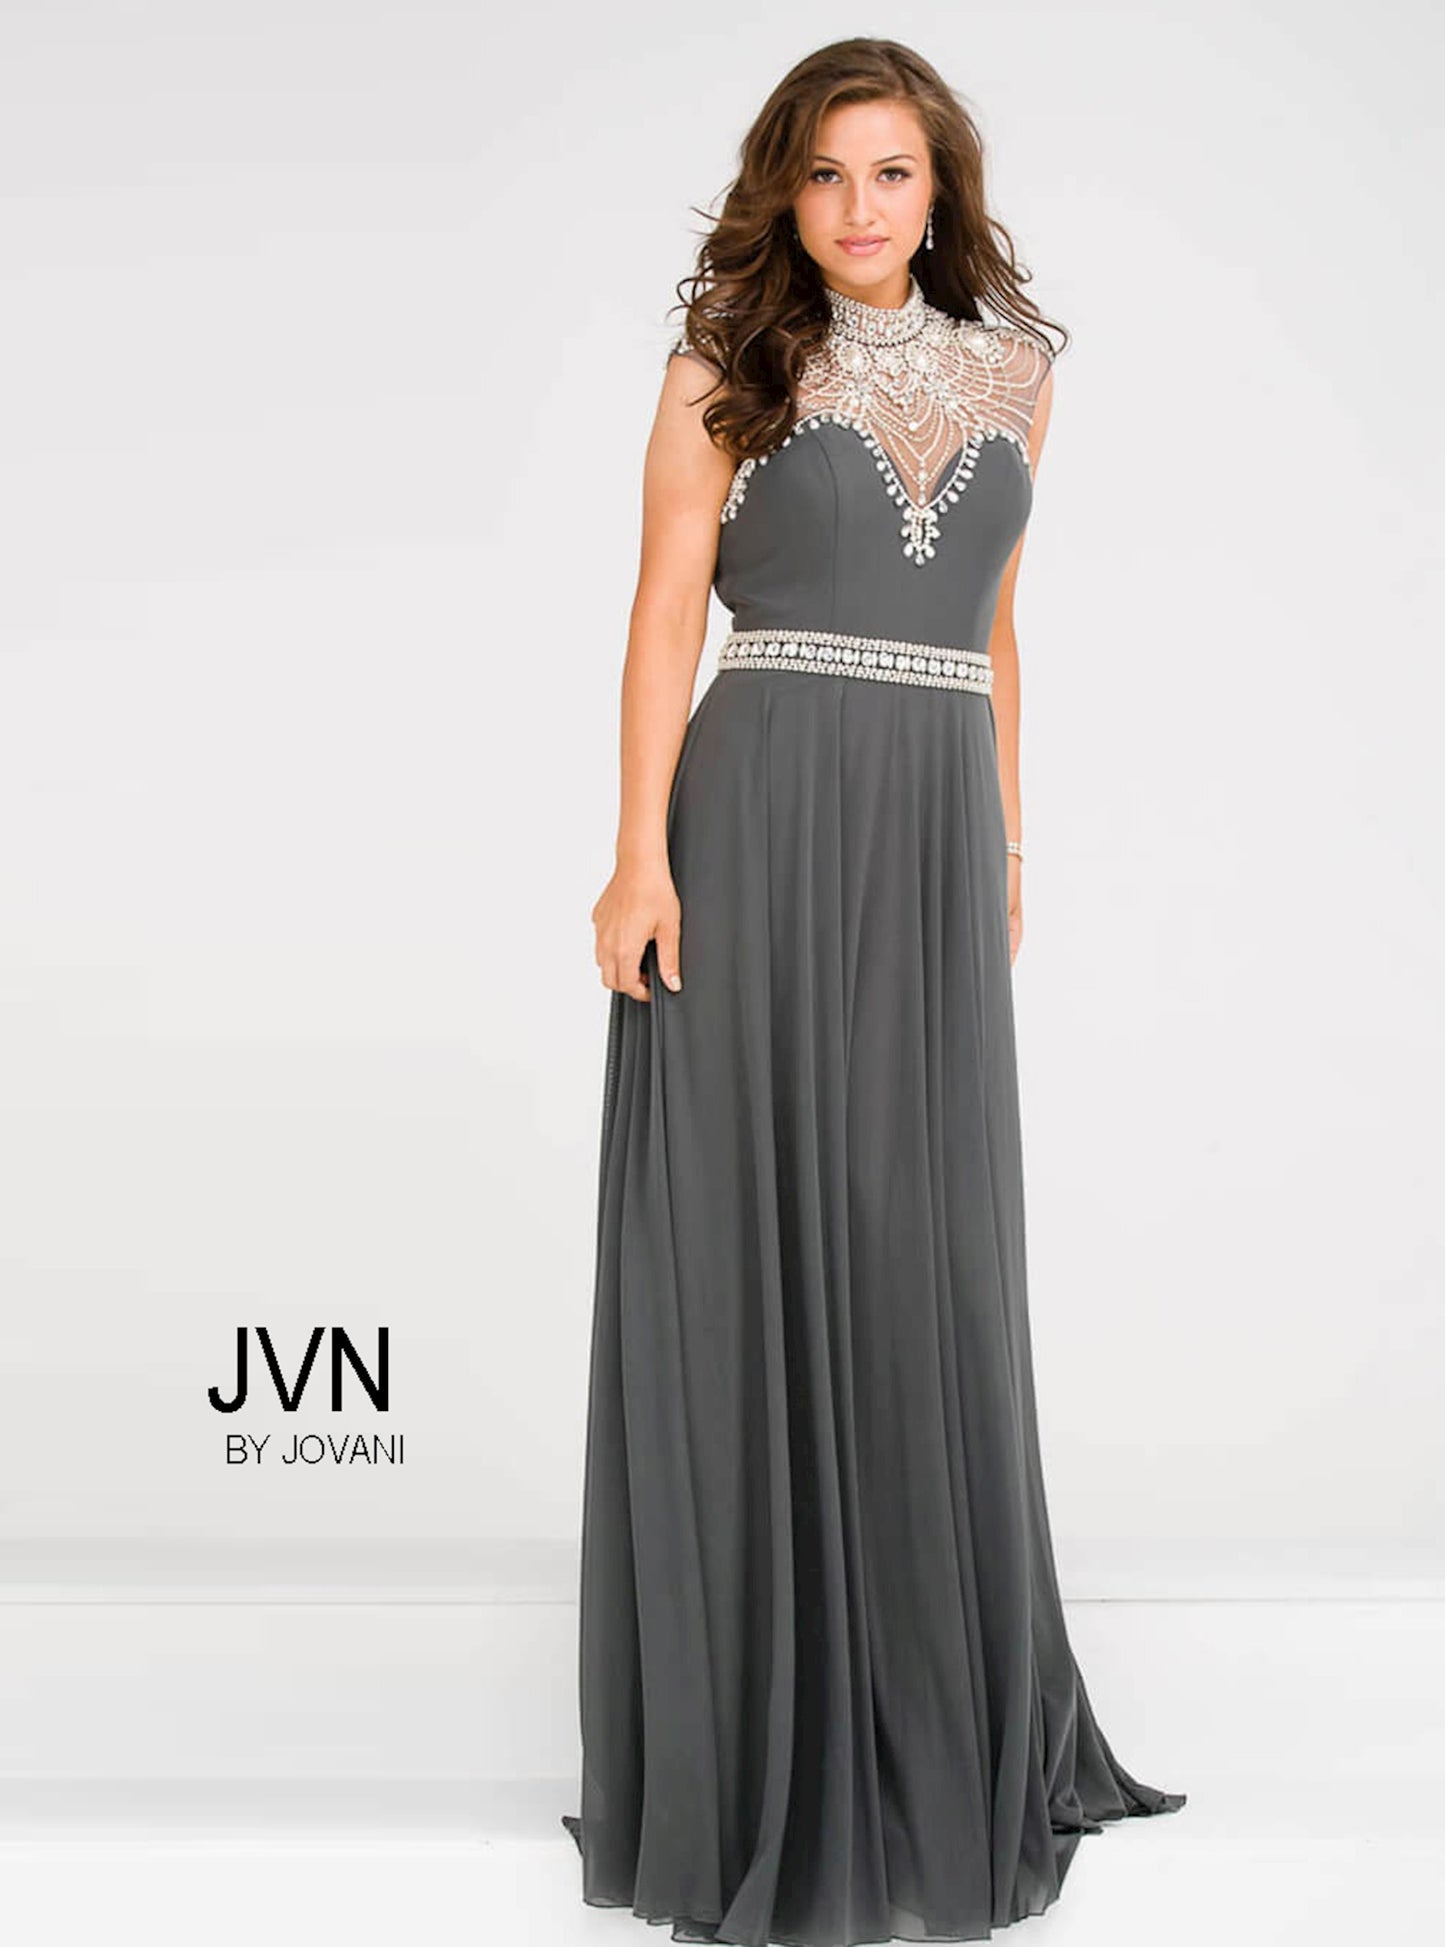 Jovani JVN 48641 size 4 Gunmetal Long A Line Formal Dress Embellished Gown High Neck